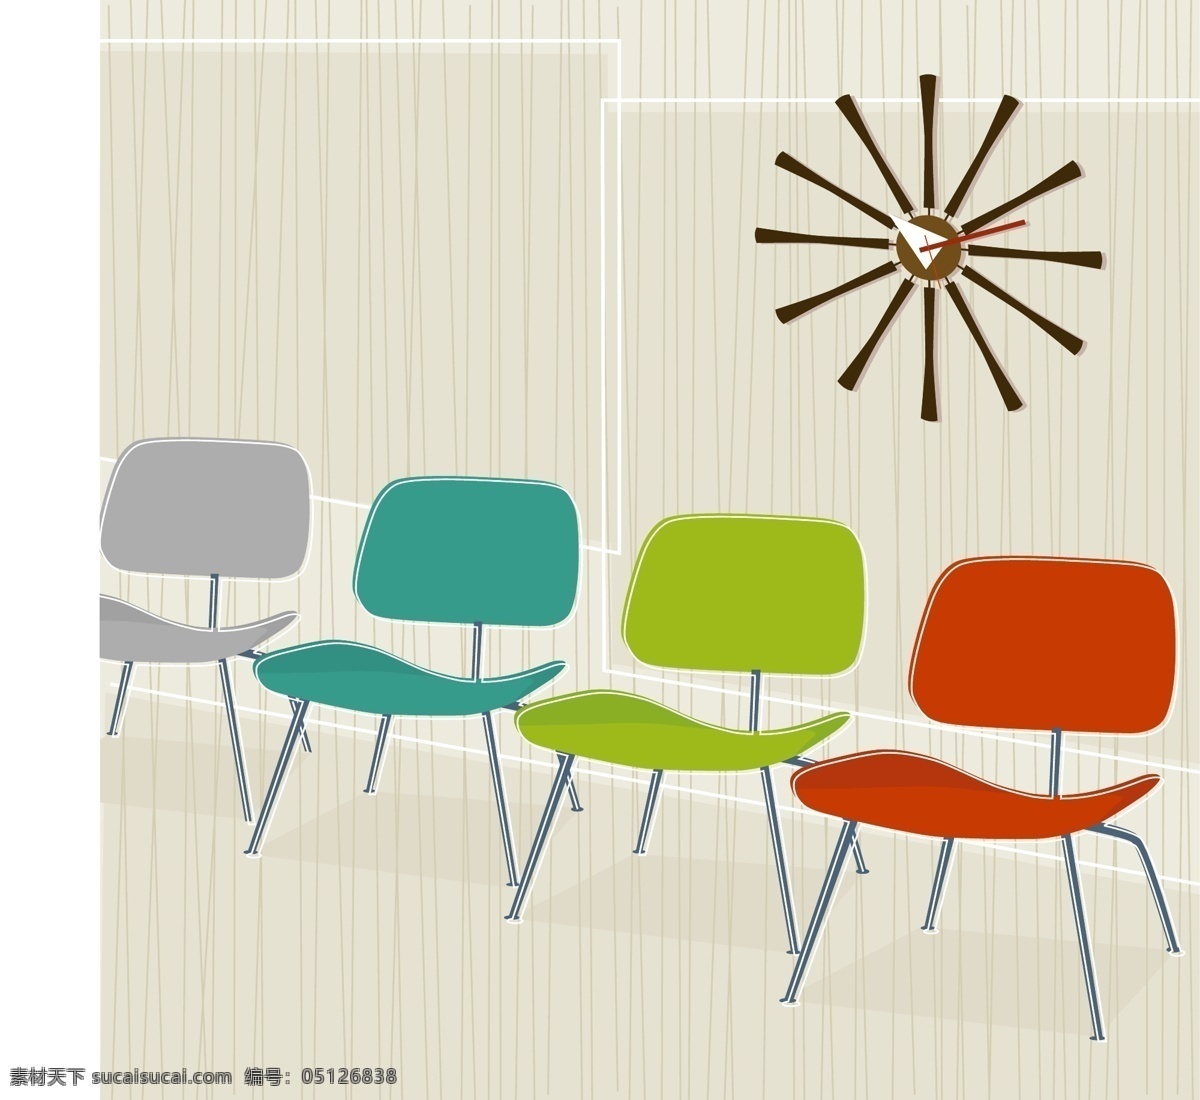 矢量 彩色 椅子 家居设计 抽象图案 时尚花纹 矢量素材 个性潮流装饰 矢量图